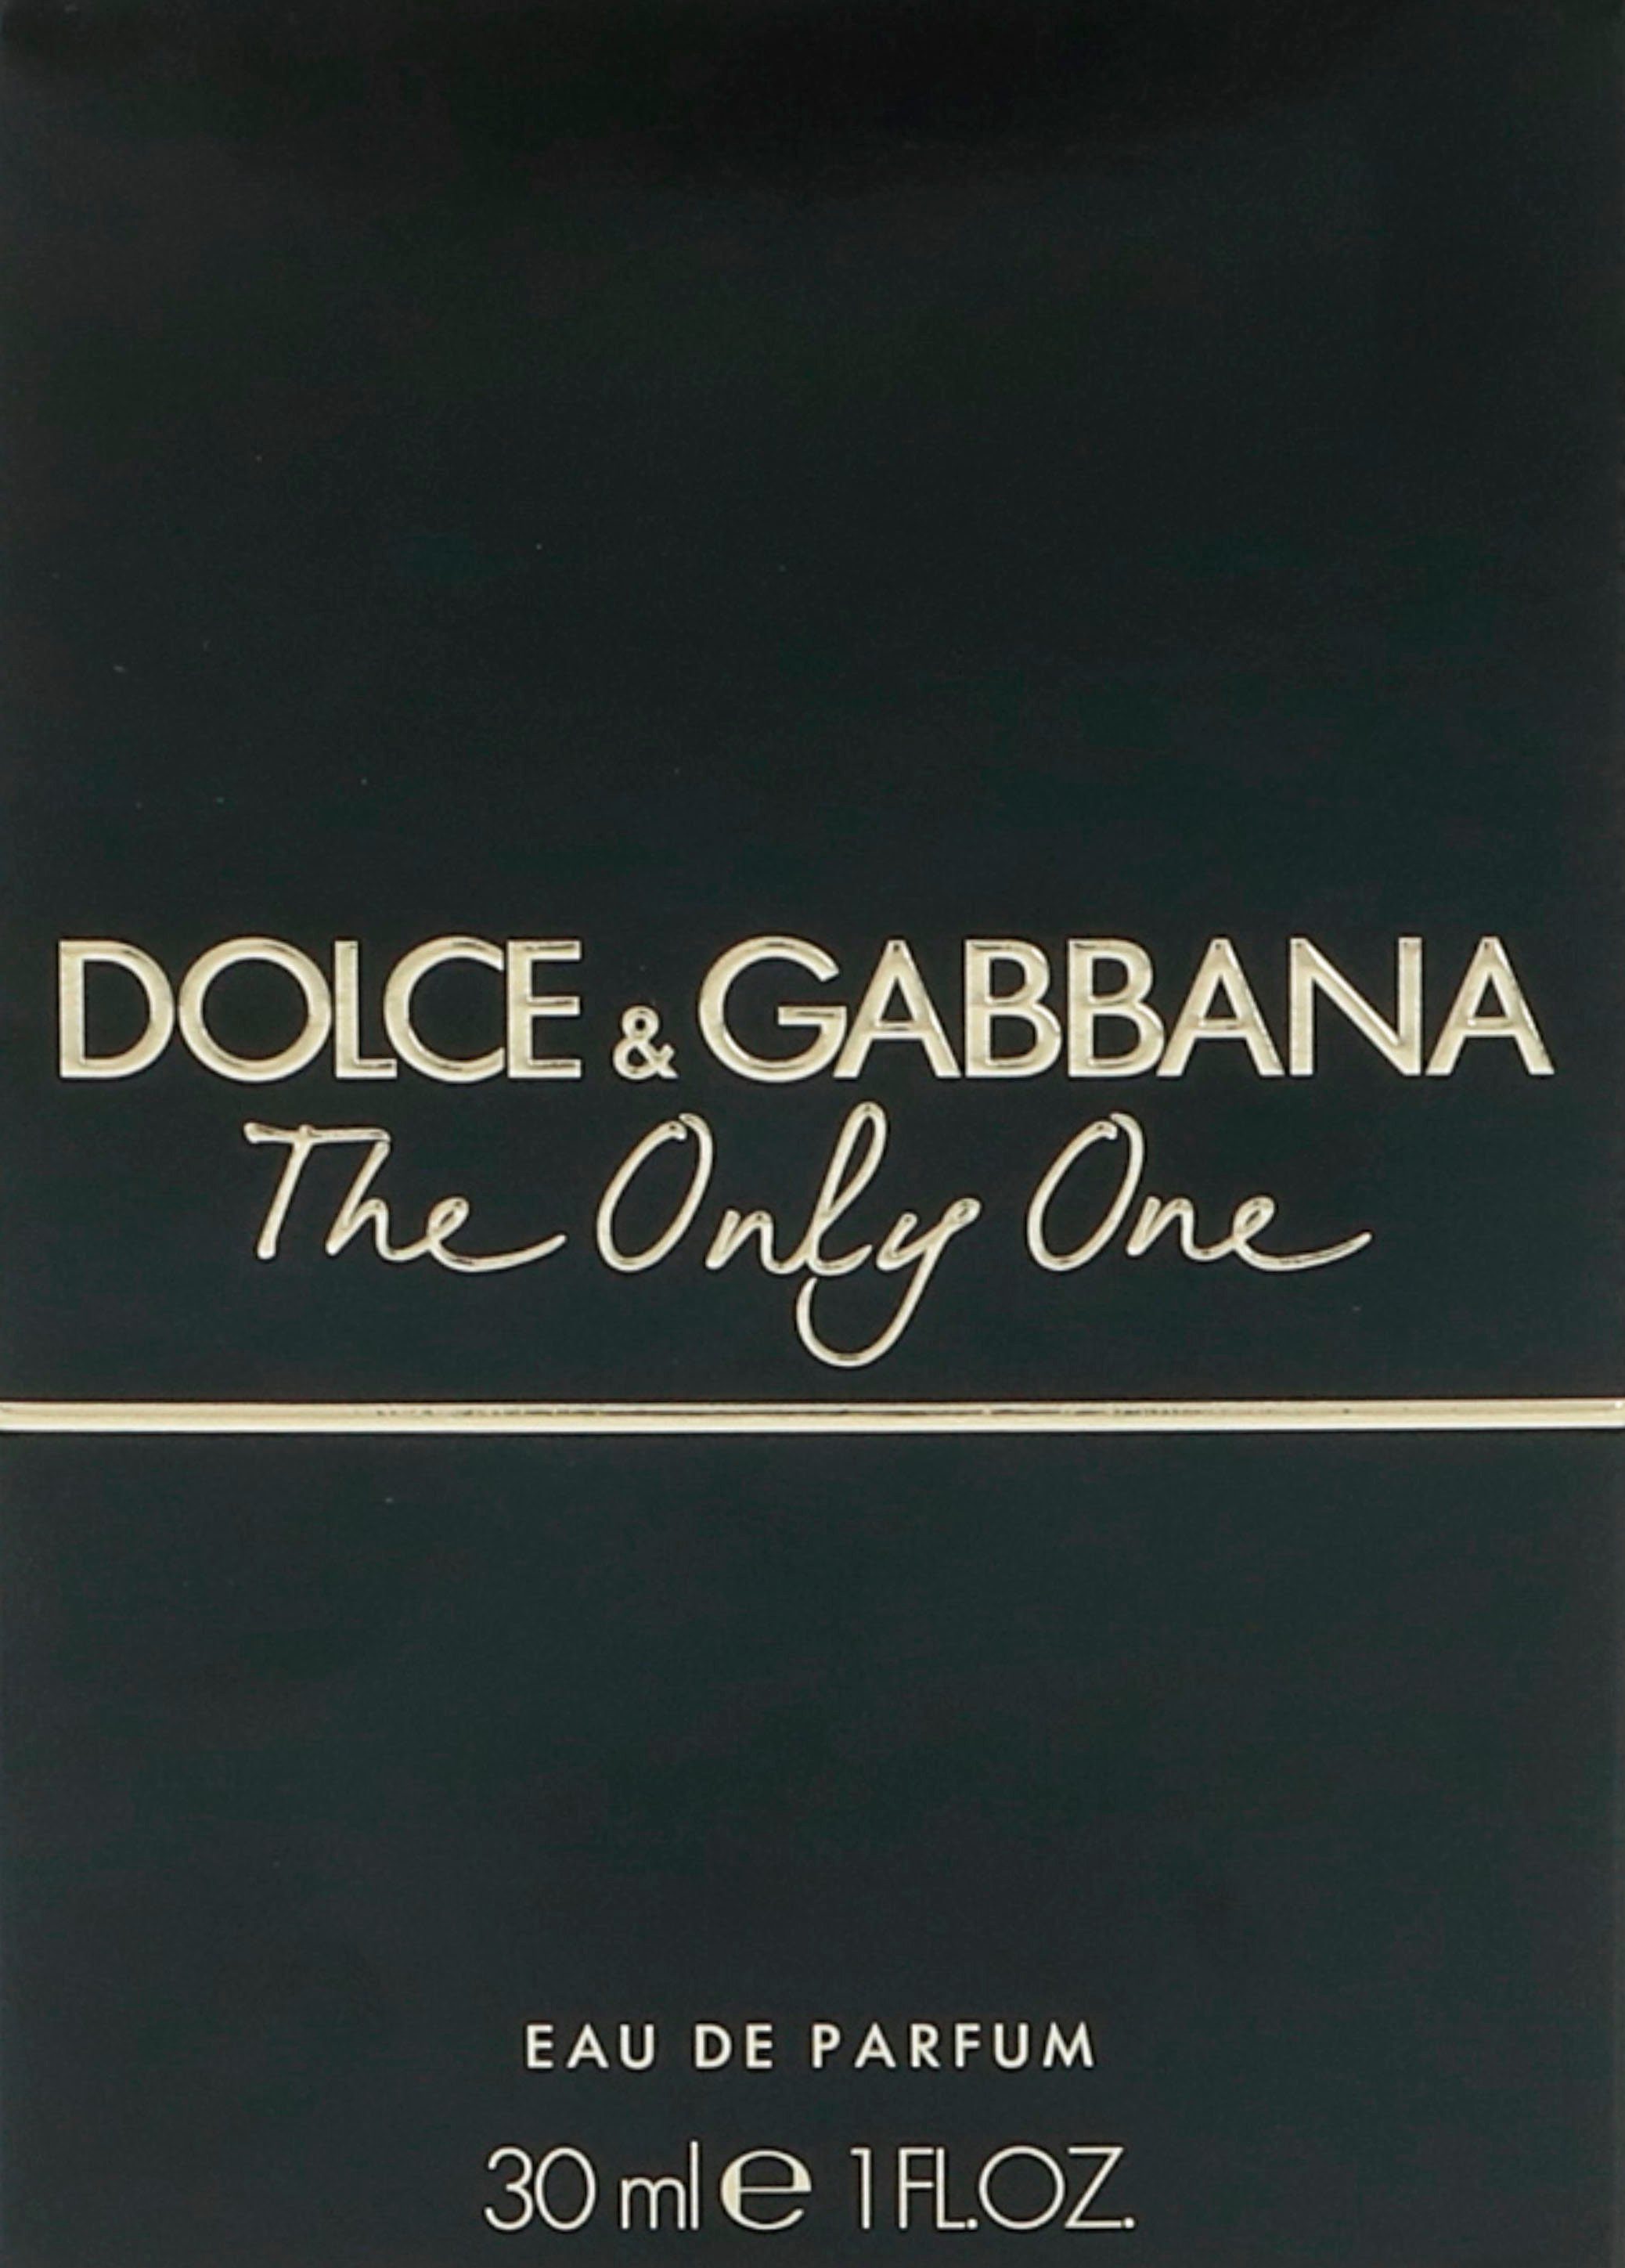 DOLCE & GABBANA The One de Eau Parfum Only